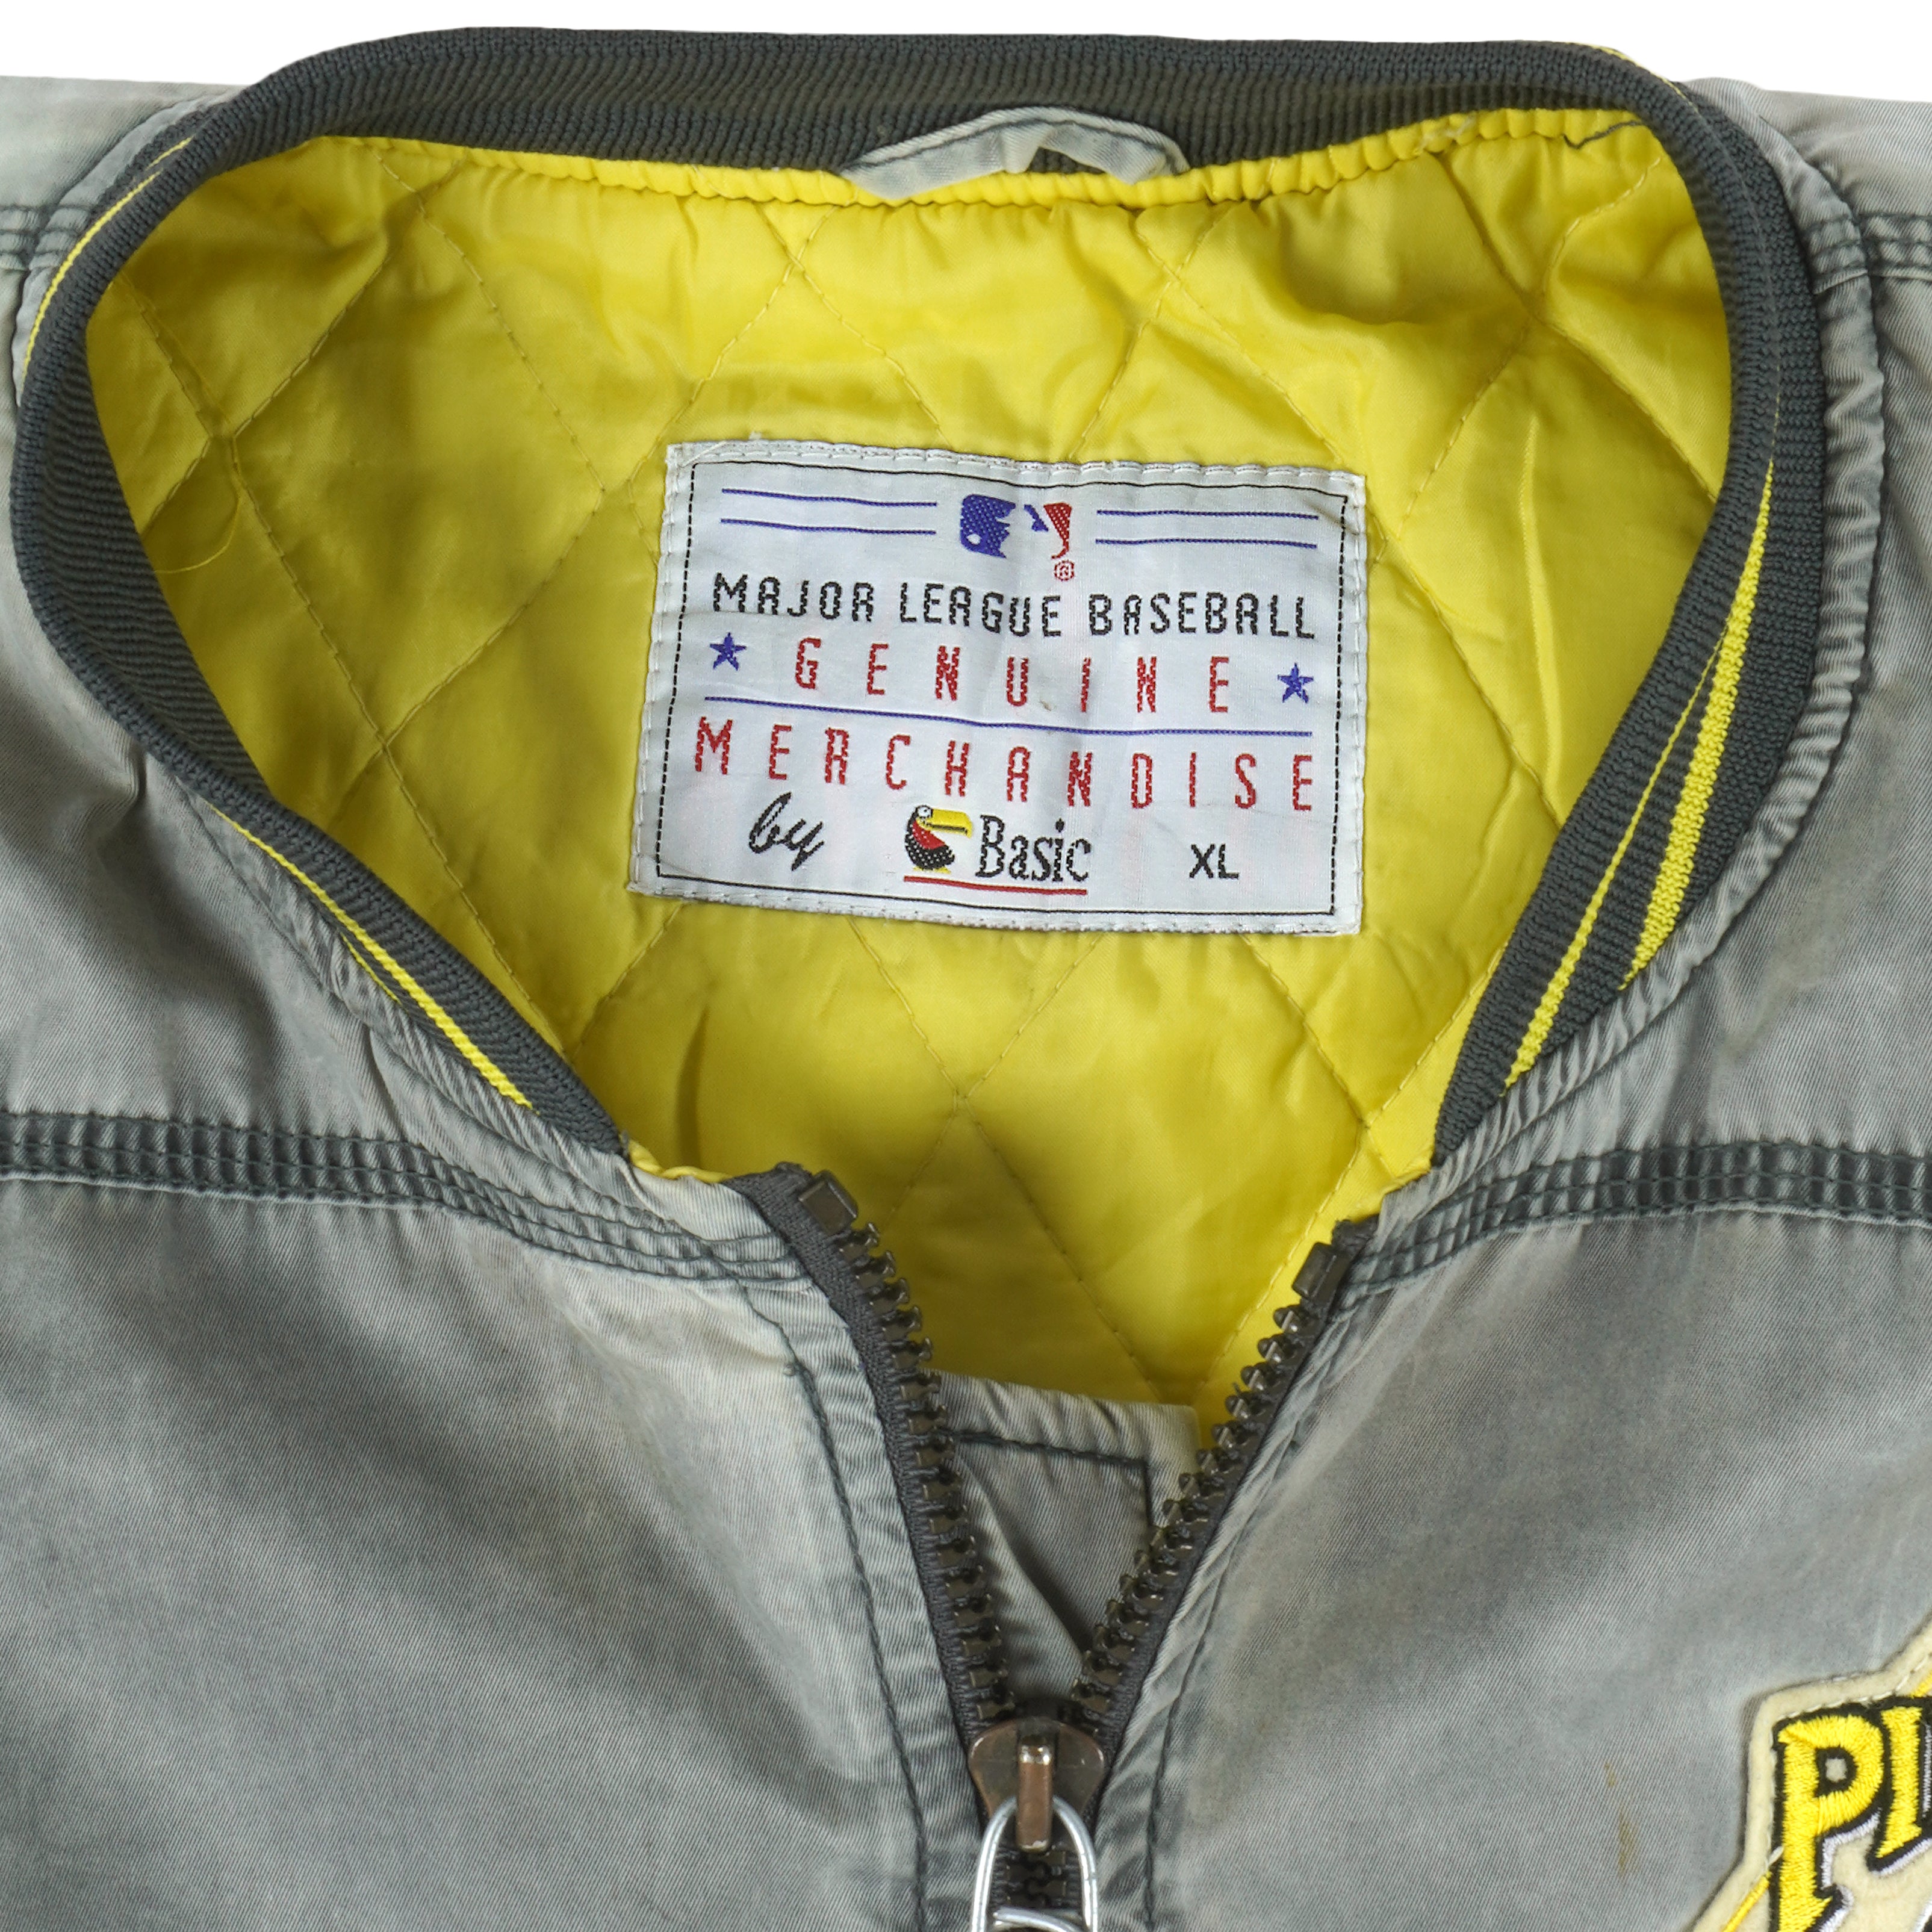 pittsburgh pirates jacket vintage